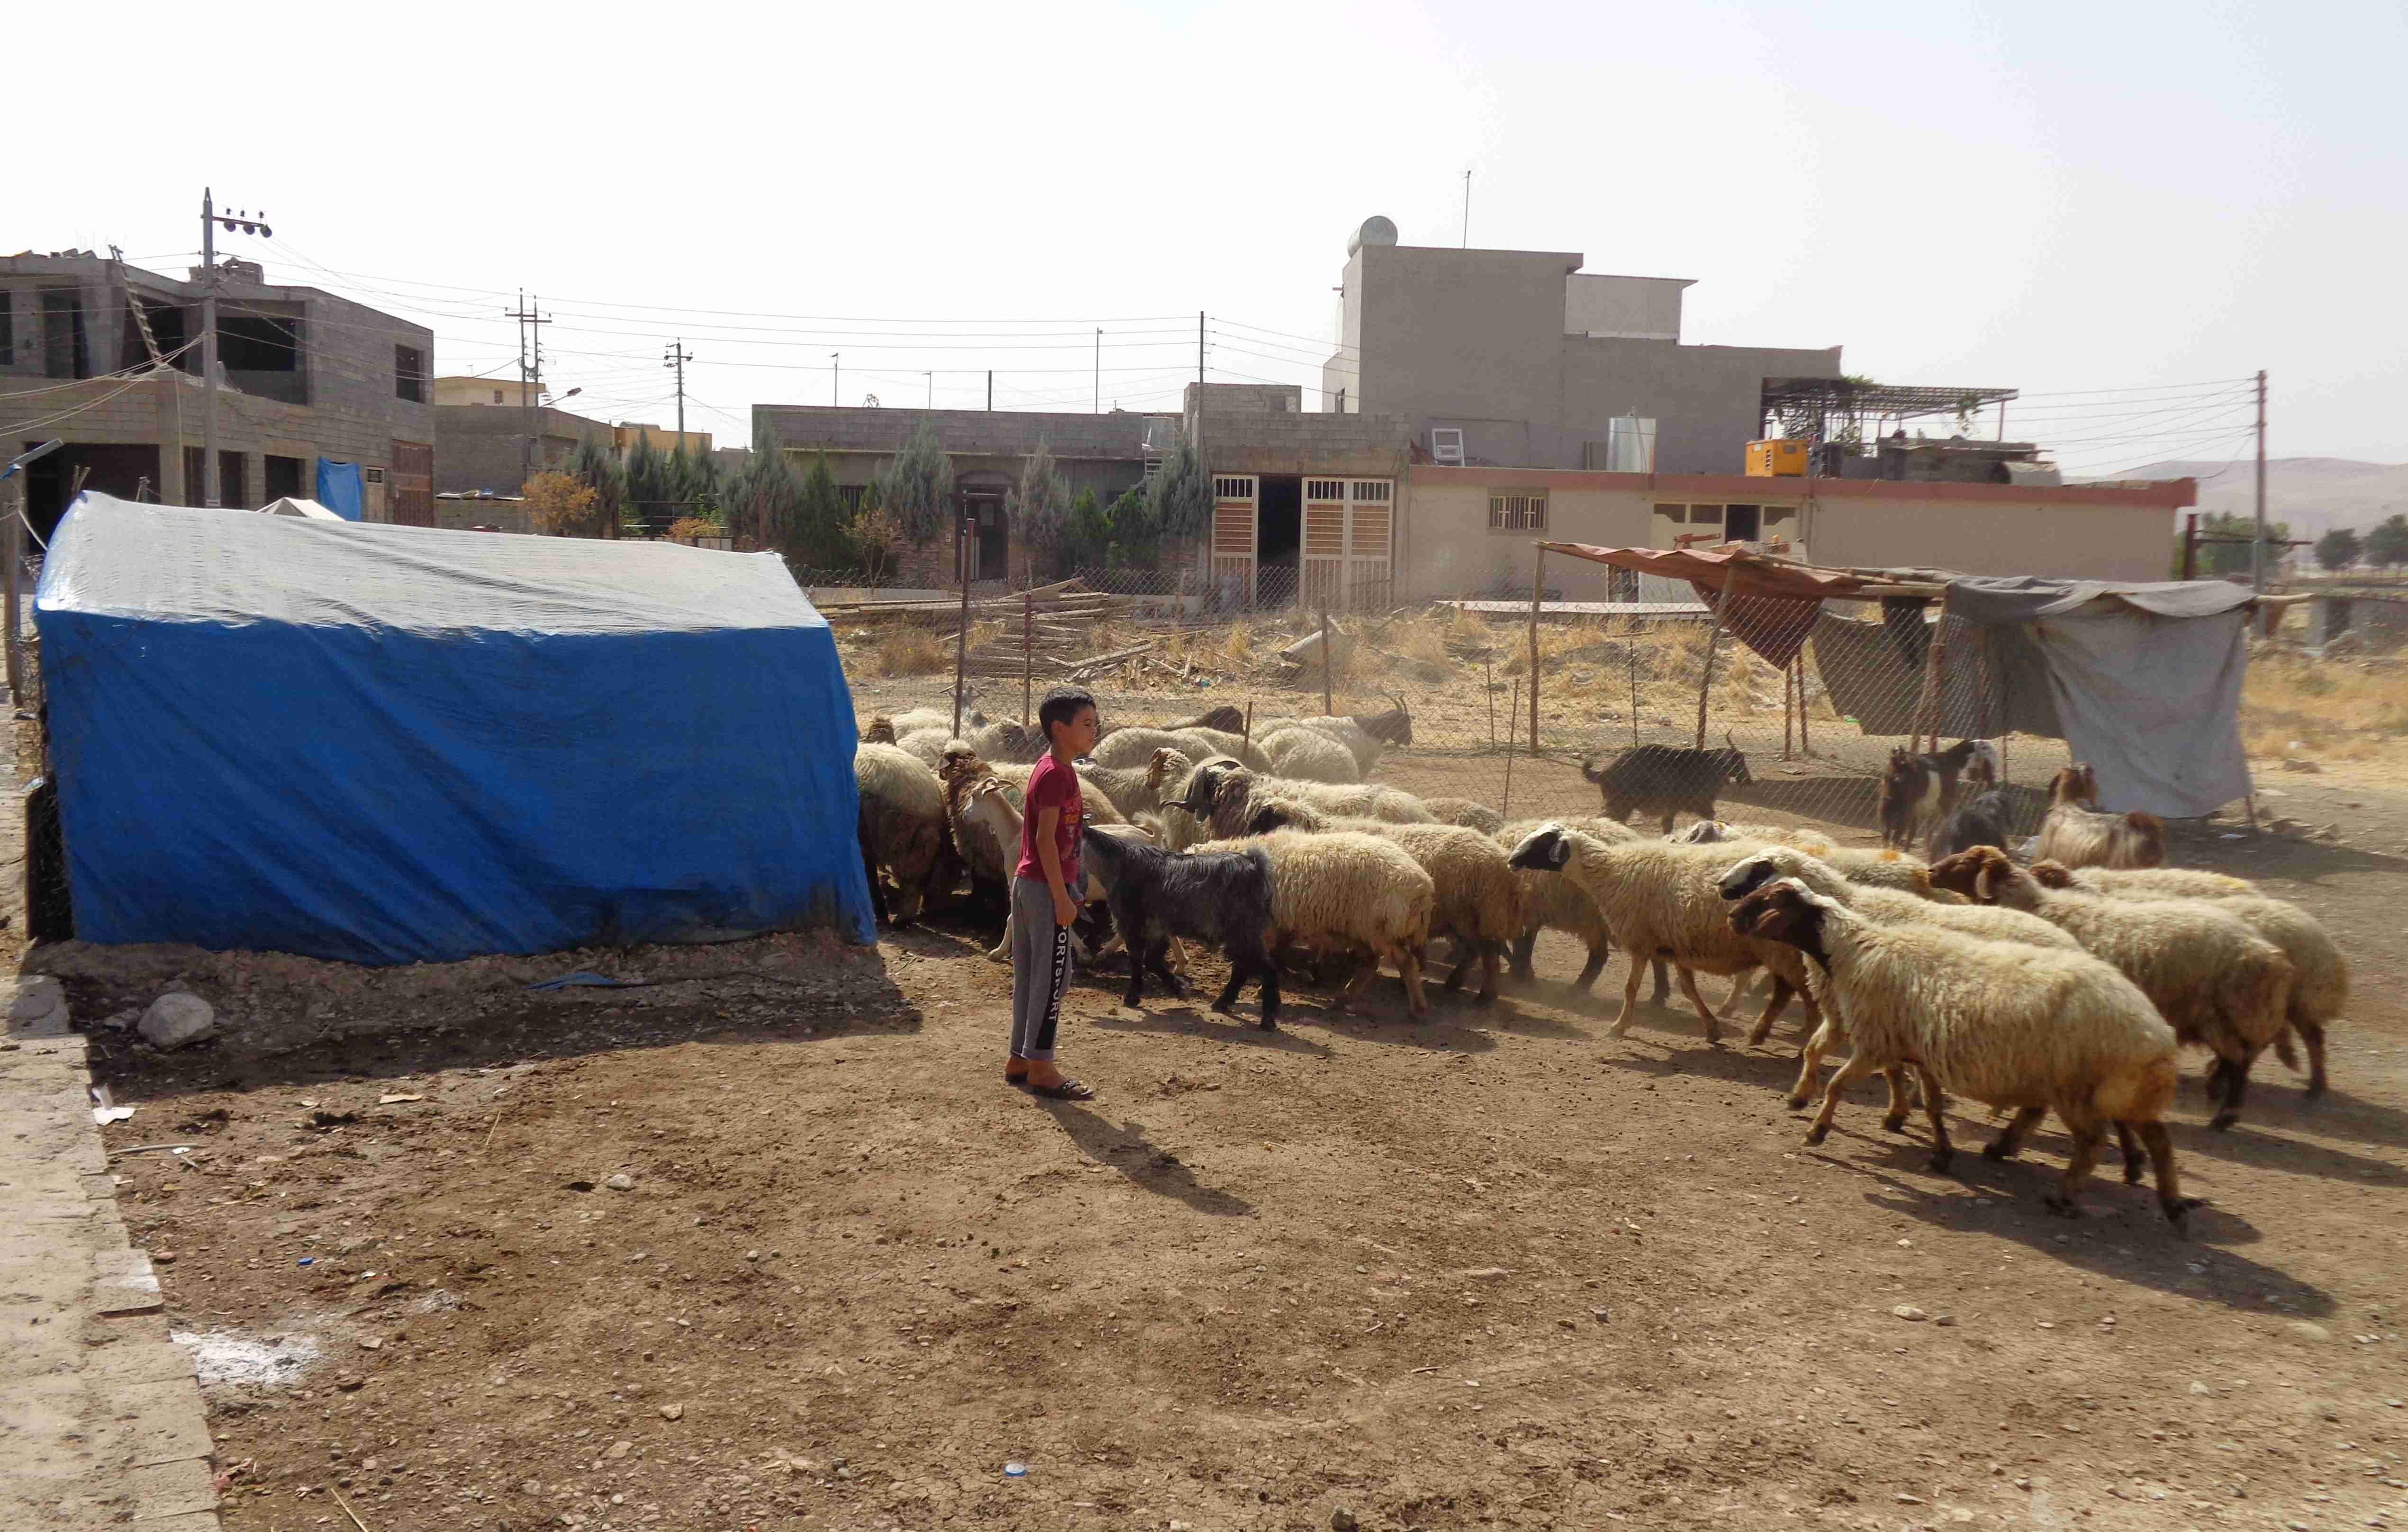 Szene aus einem Dorf, links ein blaues Zelt, im Hintergrund Gebäude, rechts ein Schulkind und ein Dutzend Schafe.